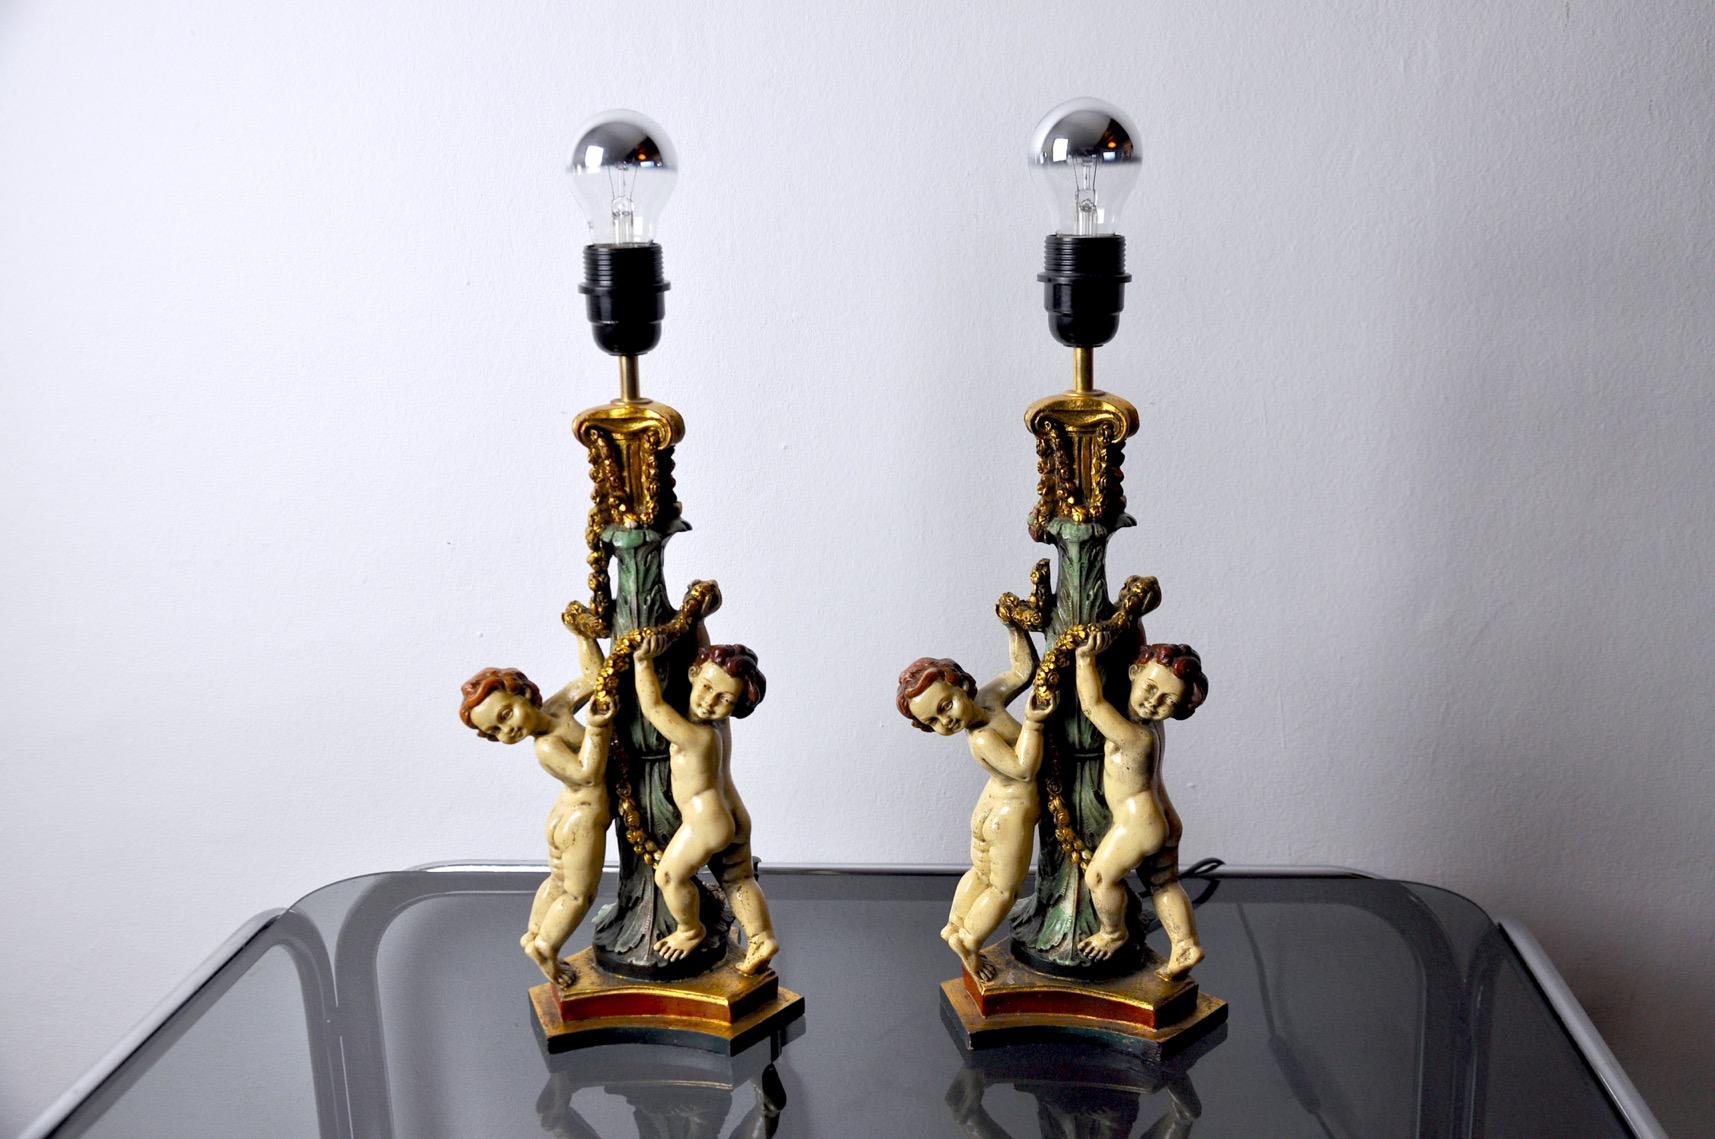 Très belle paire de lampes rococo en résine produite et conçue en France dans les années 1970. Cette paire de lampes apportera une véritable touche de décoration dans votre intérieur.
* Le câble de cet article peut être d'origine et peut nécessiter